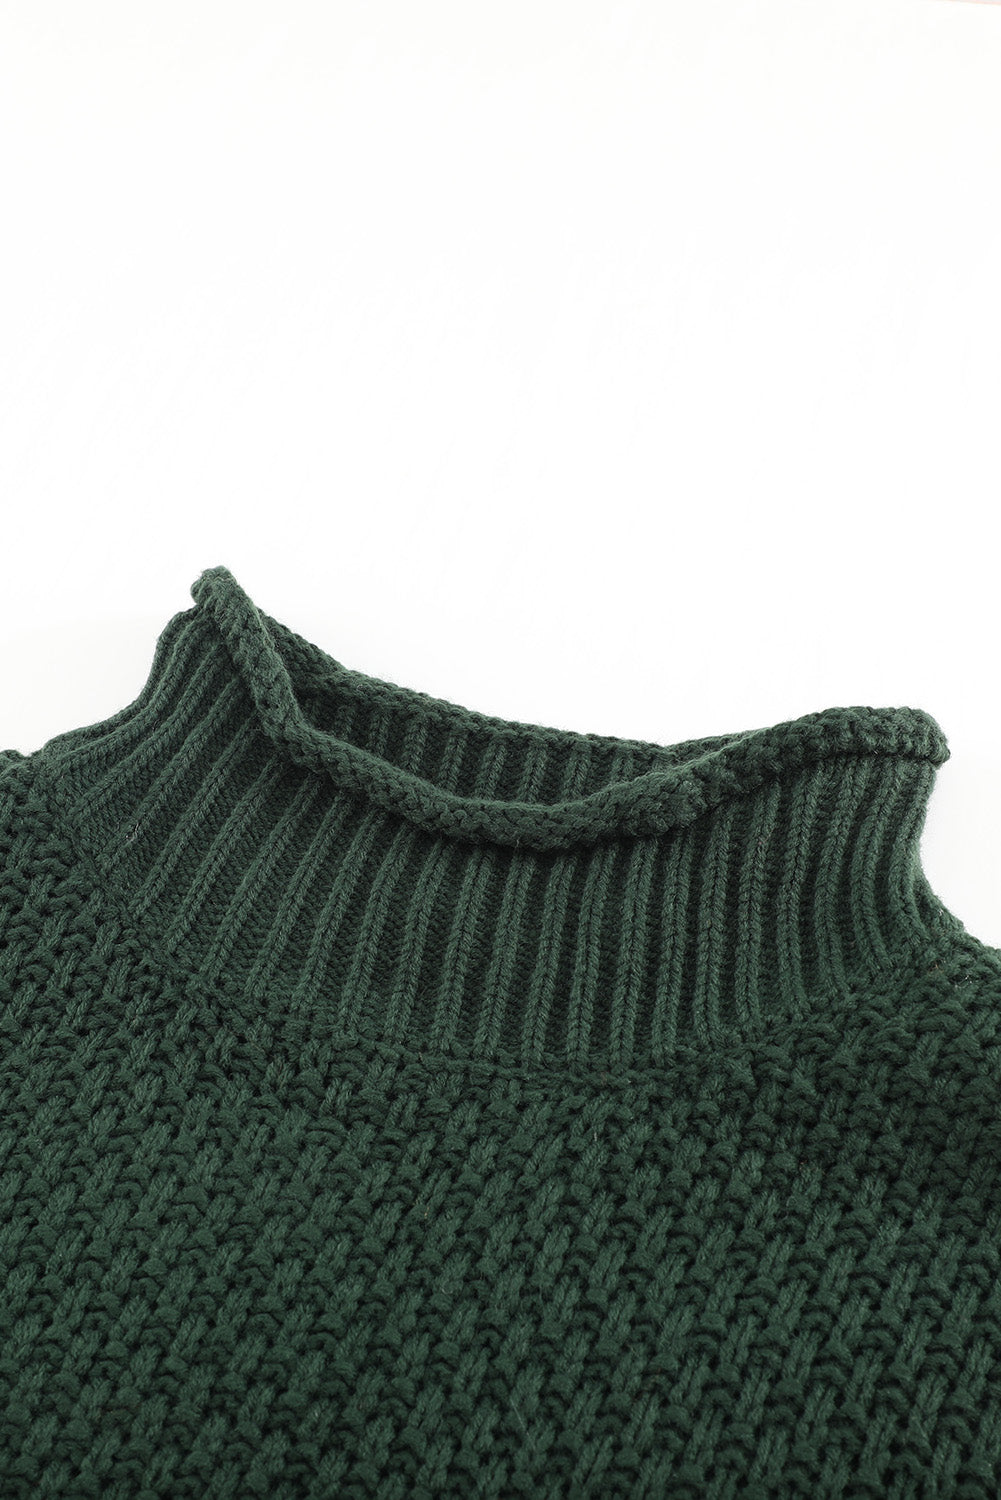 Oversize Snuggle Turtleneck Sweater